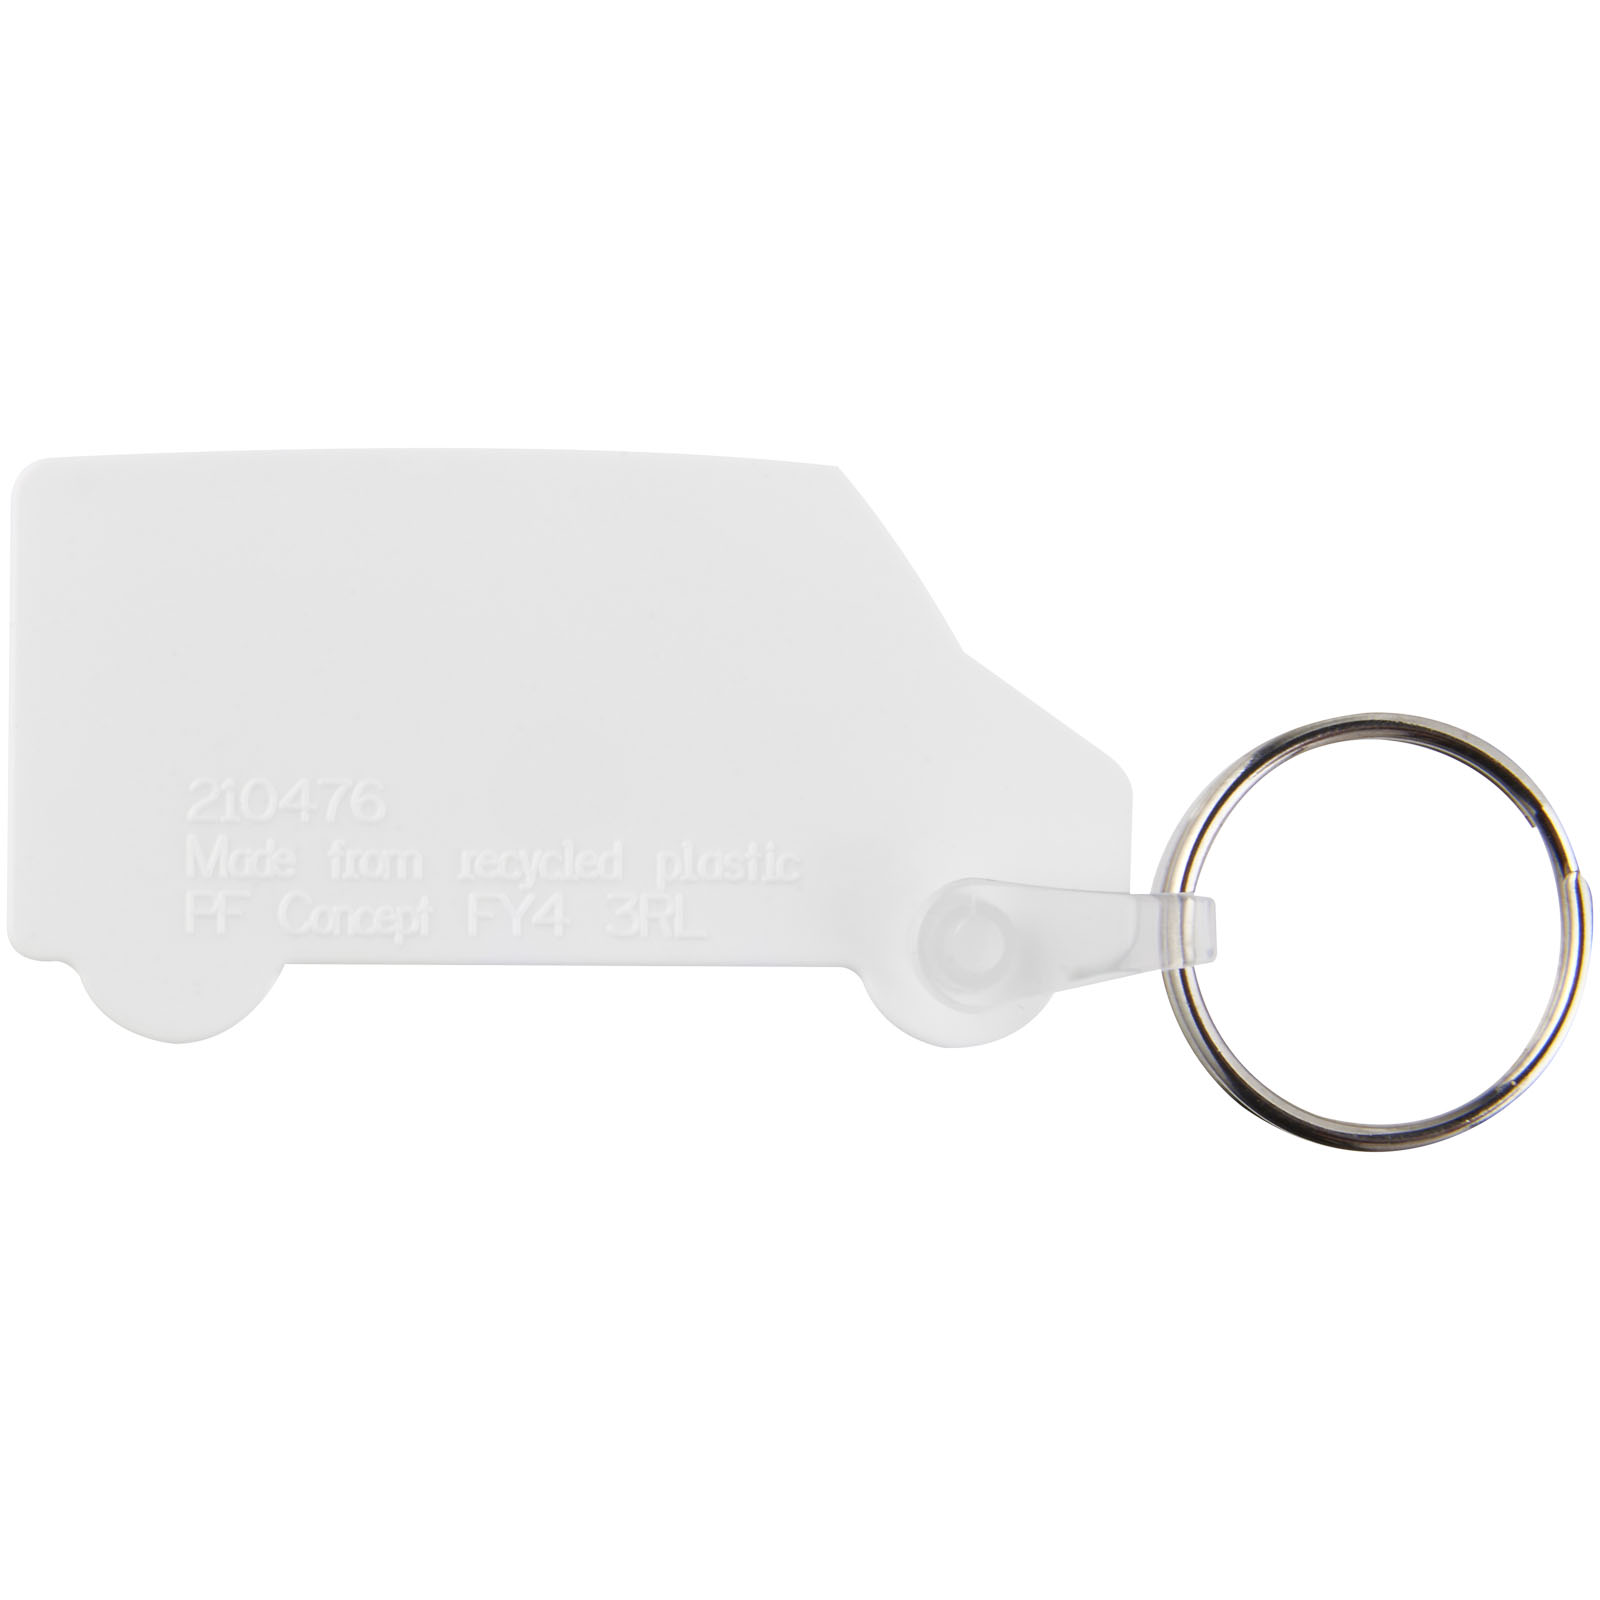 Porte-clés publicitaires - Porte-clés recyclé Tait en forme de minibus - 2